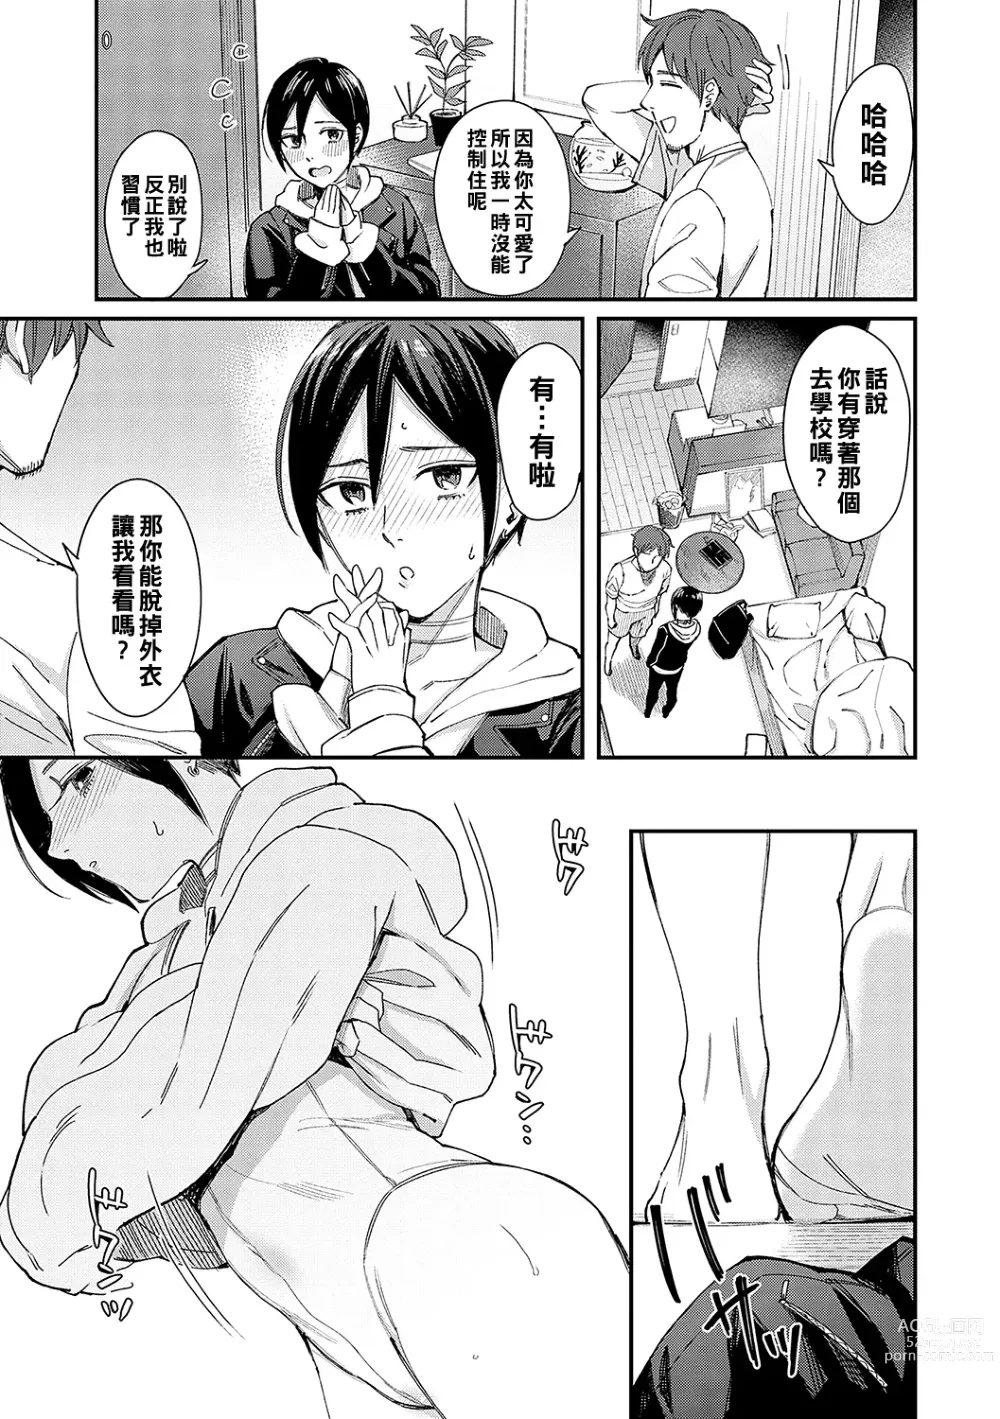 Page 7 of manga Kimi wa Tennenshoku